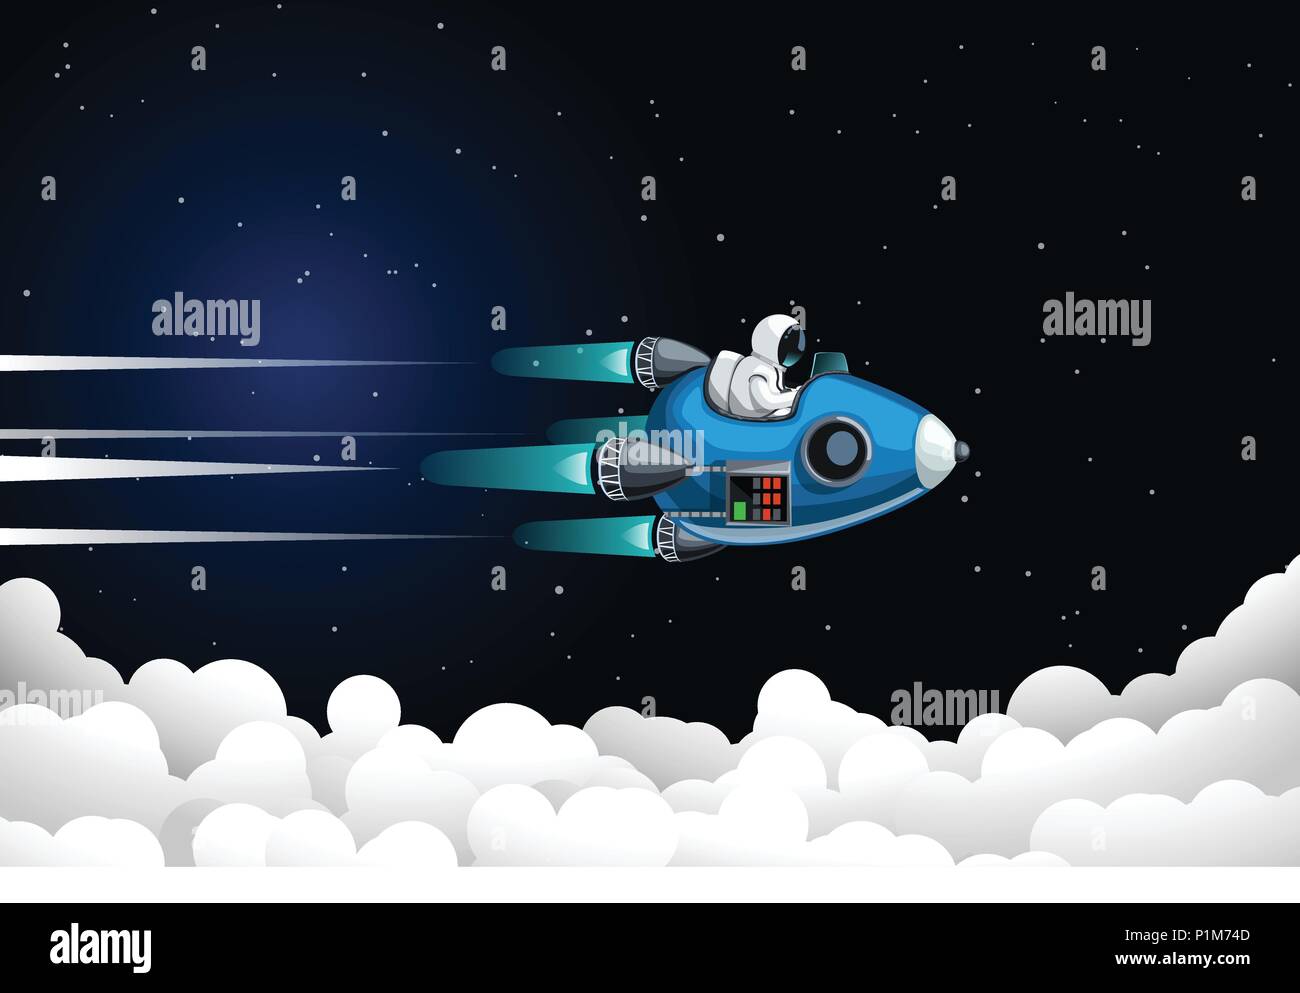 Abbildung der Lustige Astronaut in wandelbare Raumschiff vor fliegenden Wolken Stock Vektor